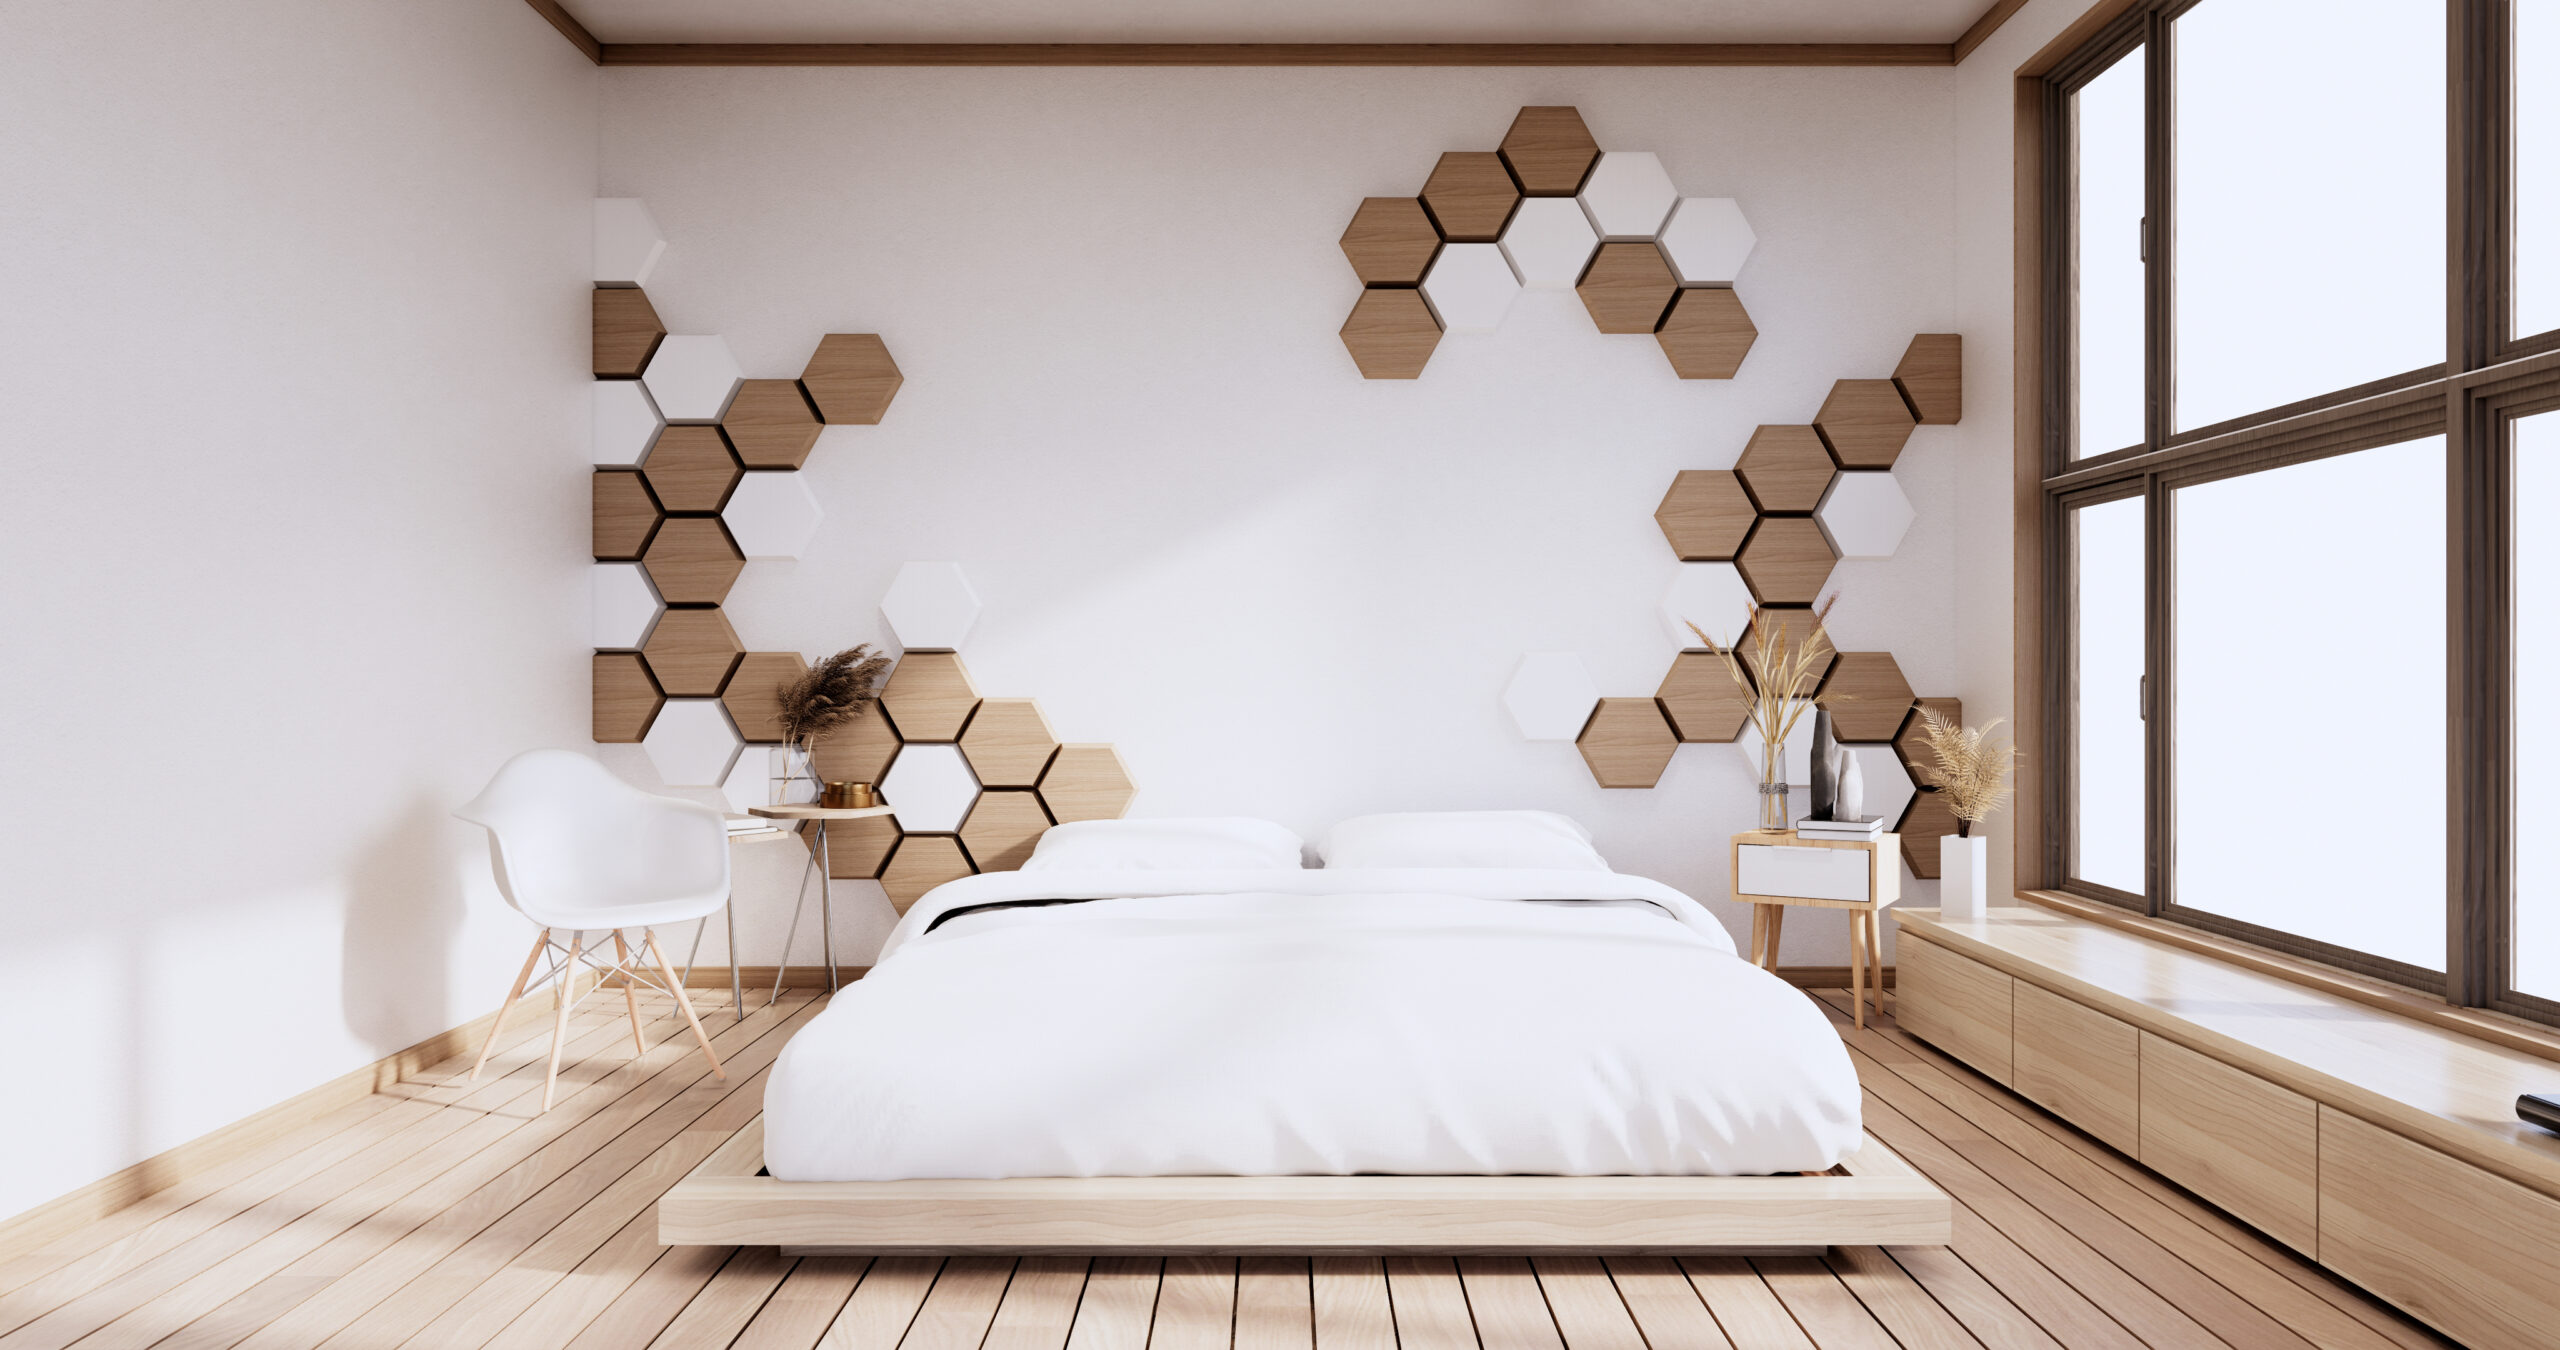 Bedroom, hexagon tiles wall design minimalist.3D rendering